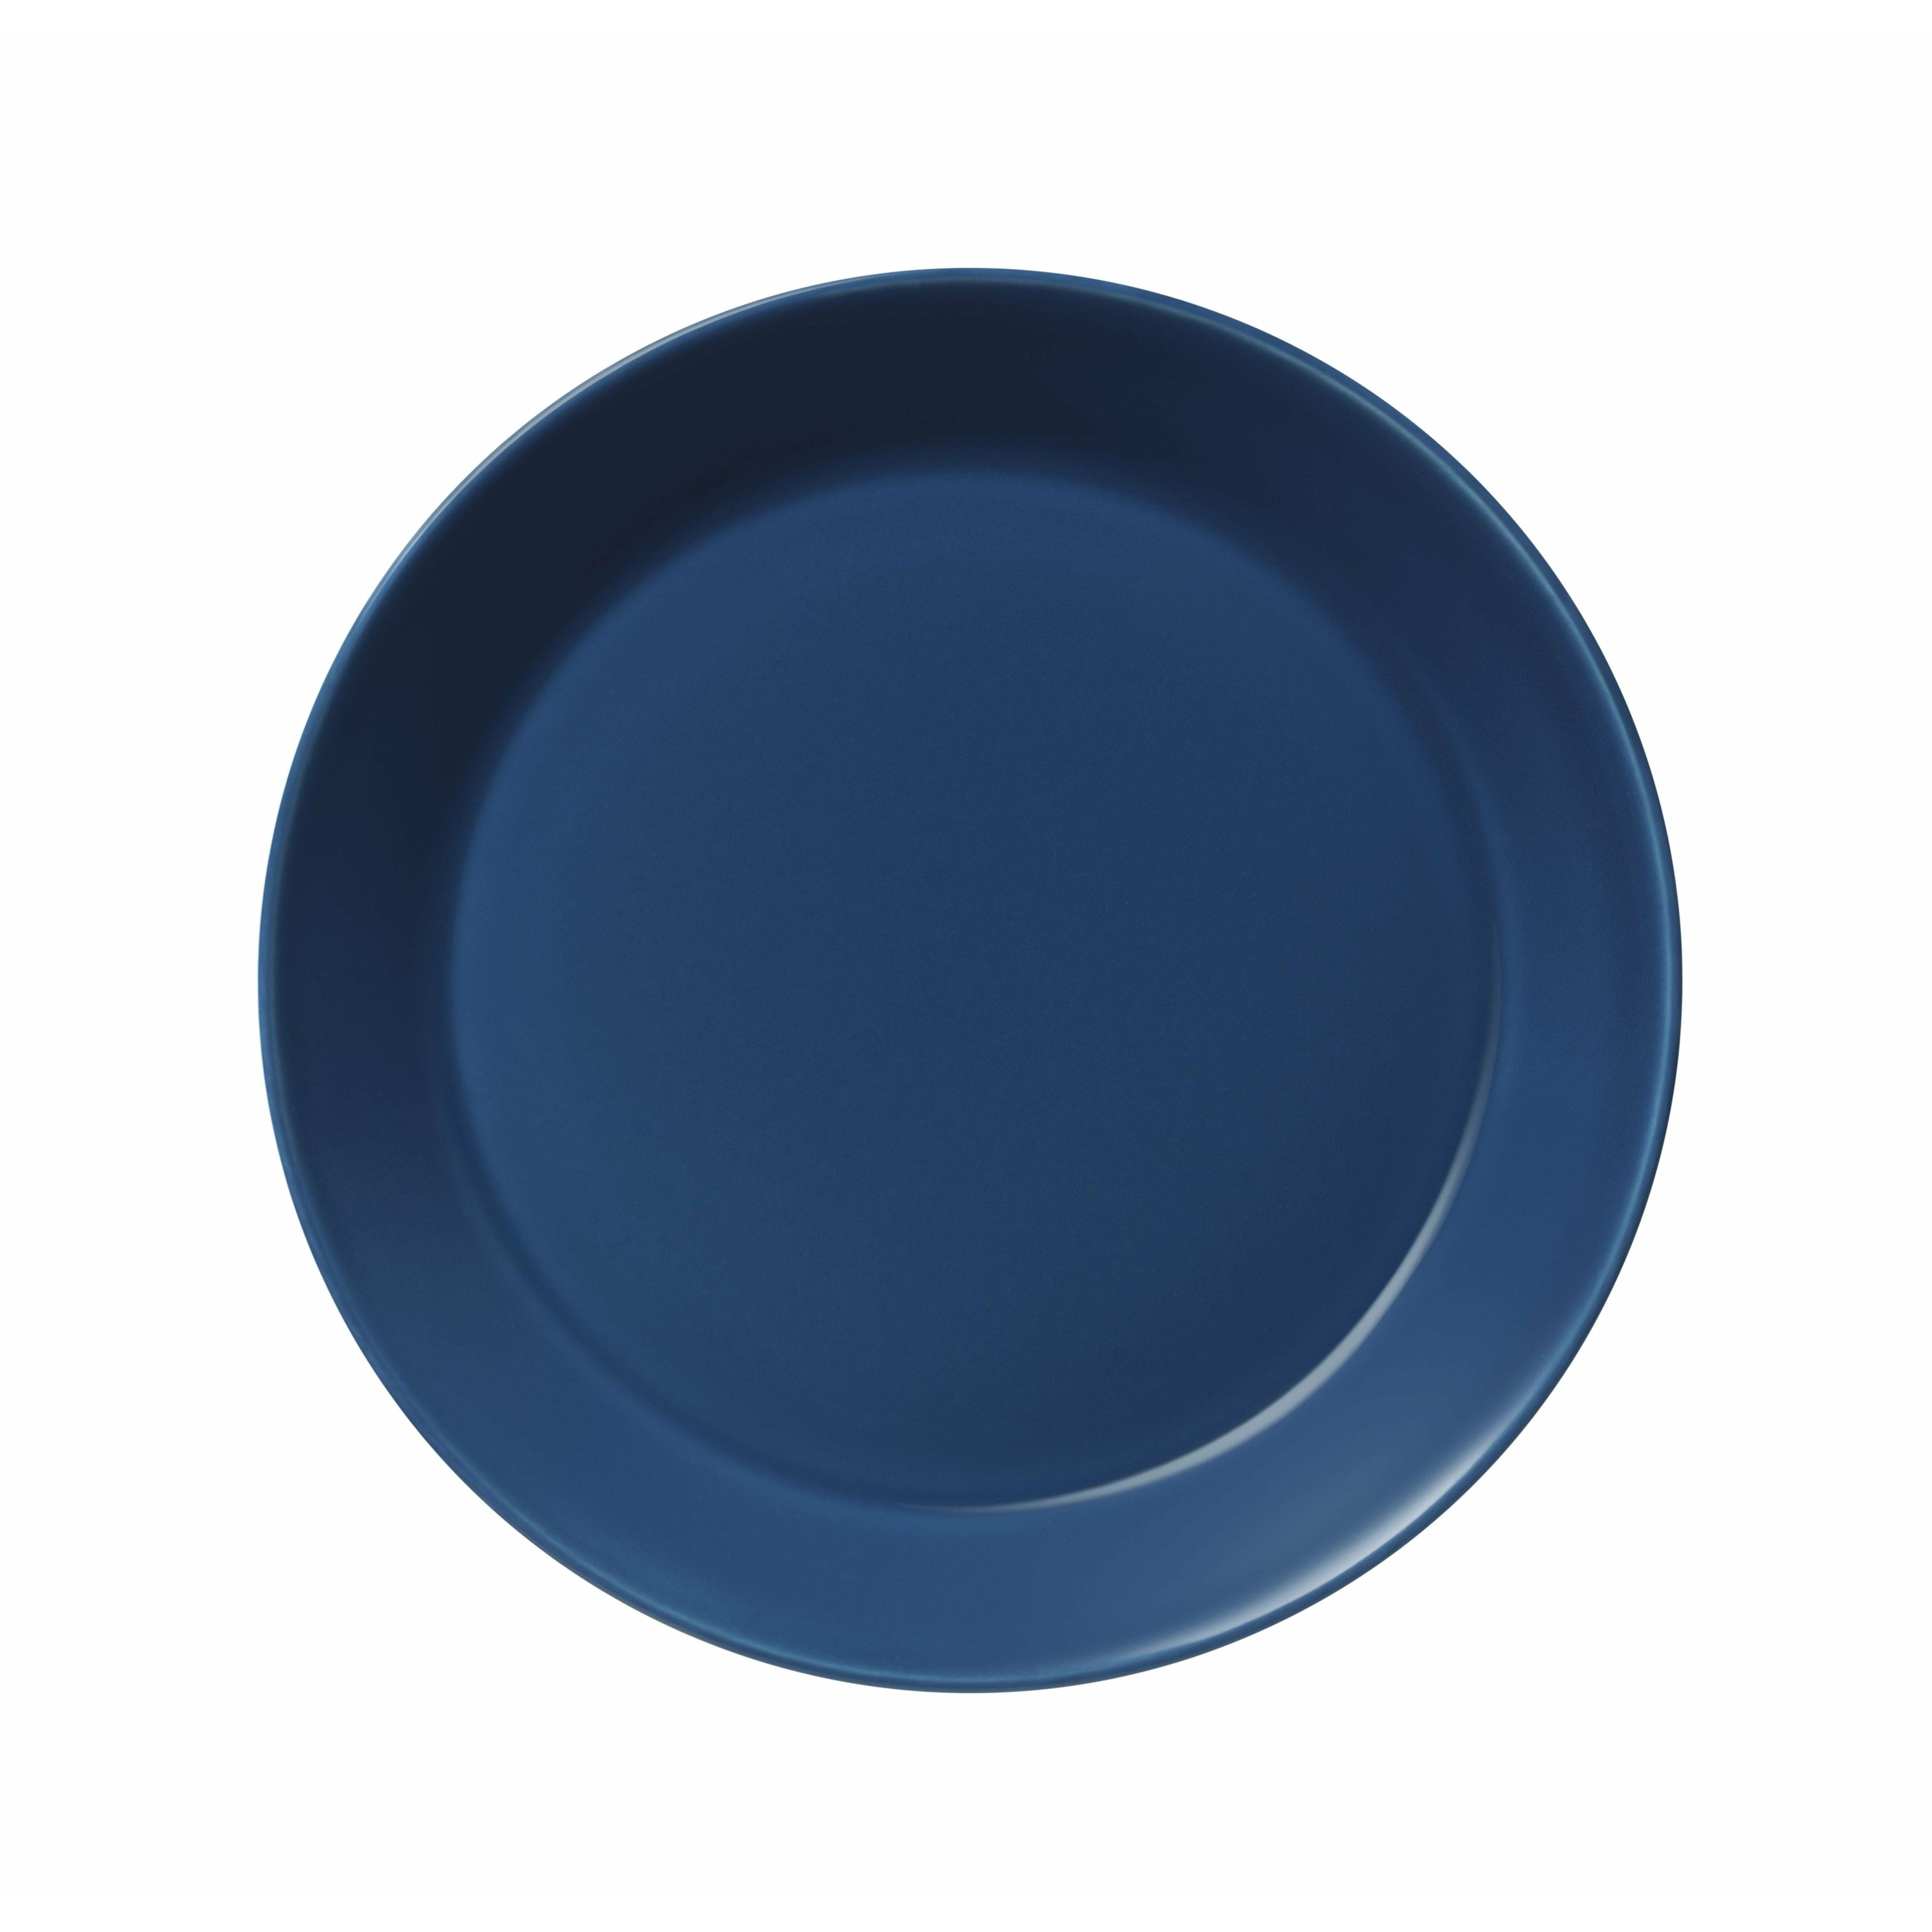 Iittala Teema plade 21 cm, vintage blå